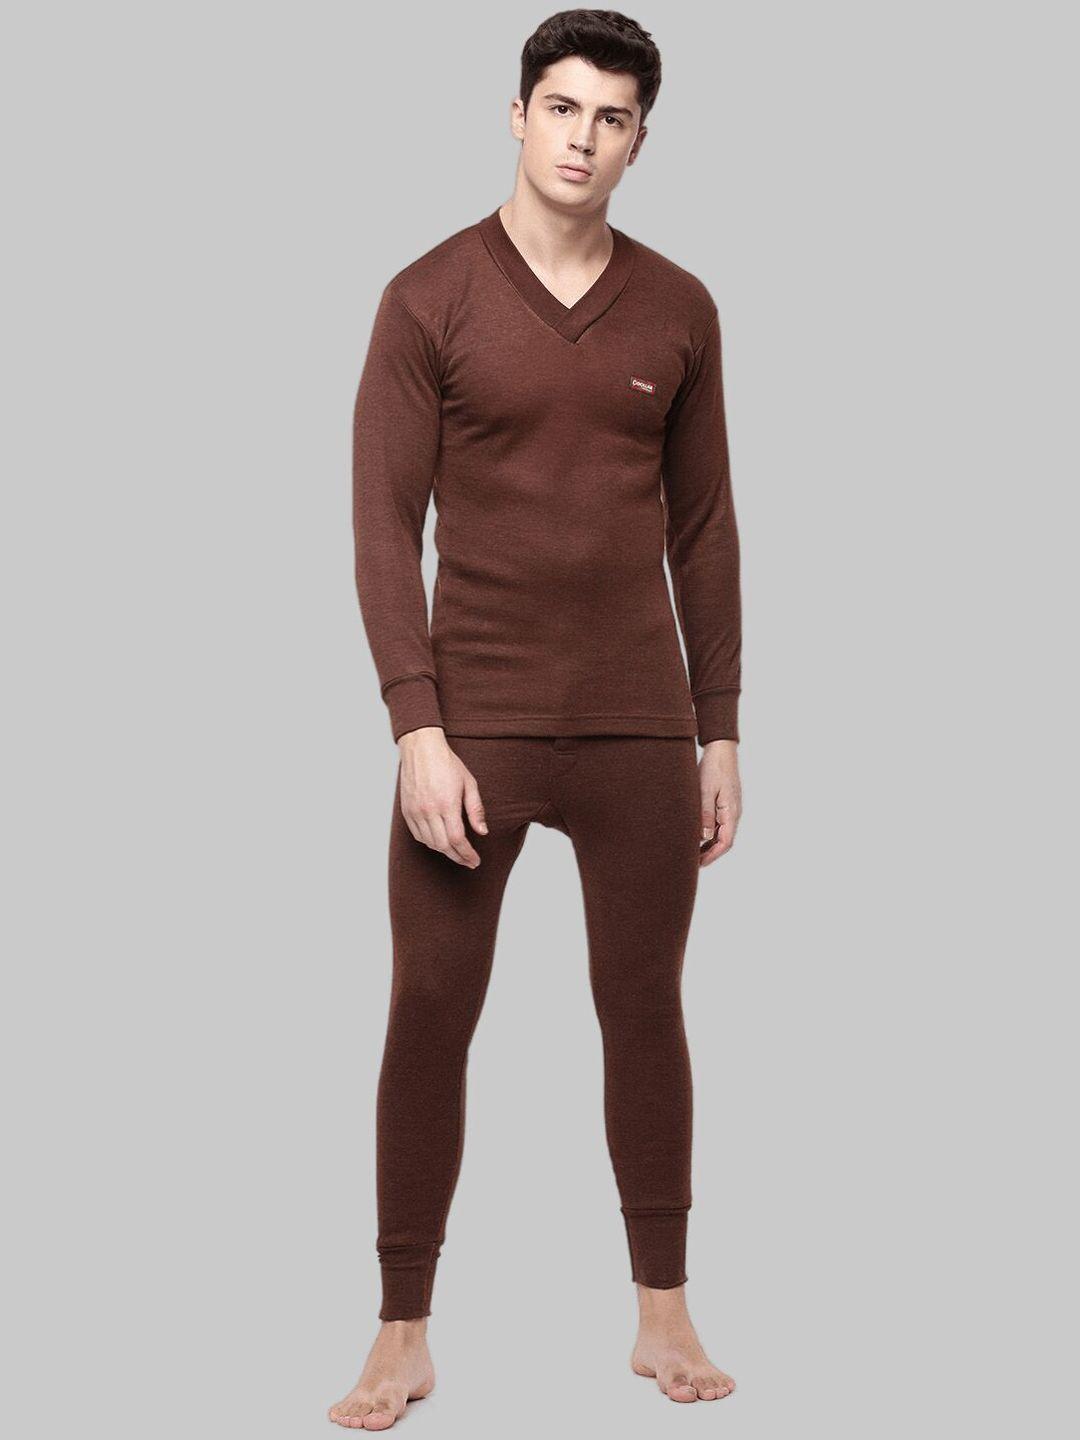 dollar-men-brown-wintercare-t-shirt-&-bottom-thermal-set